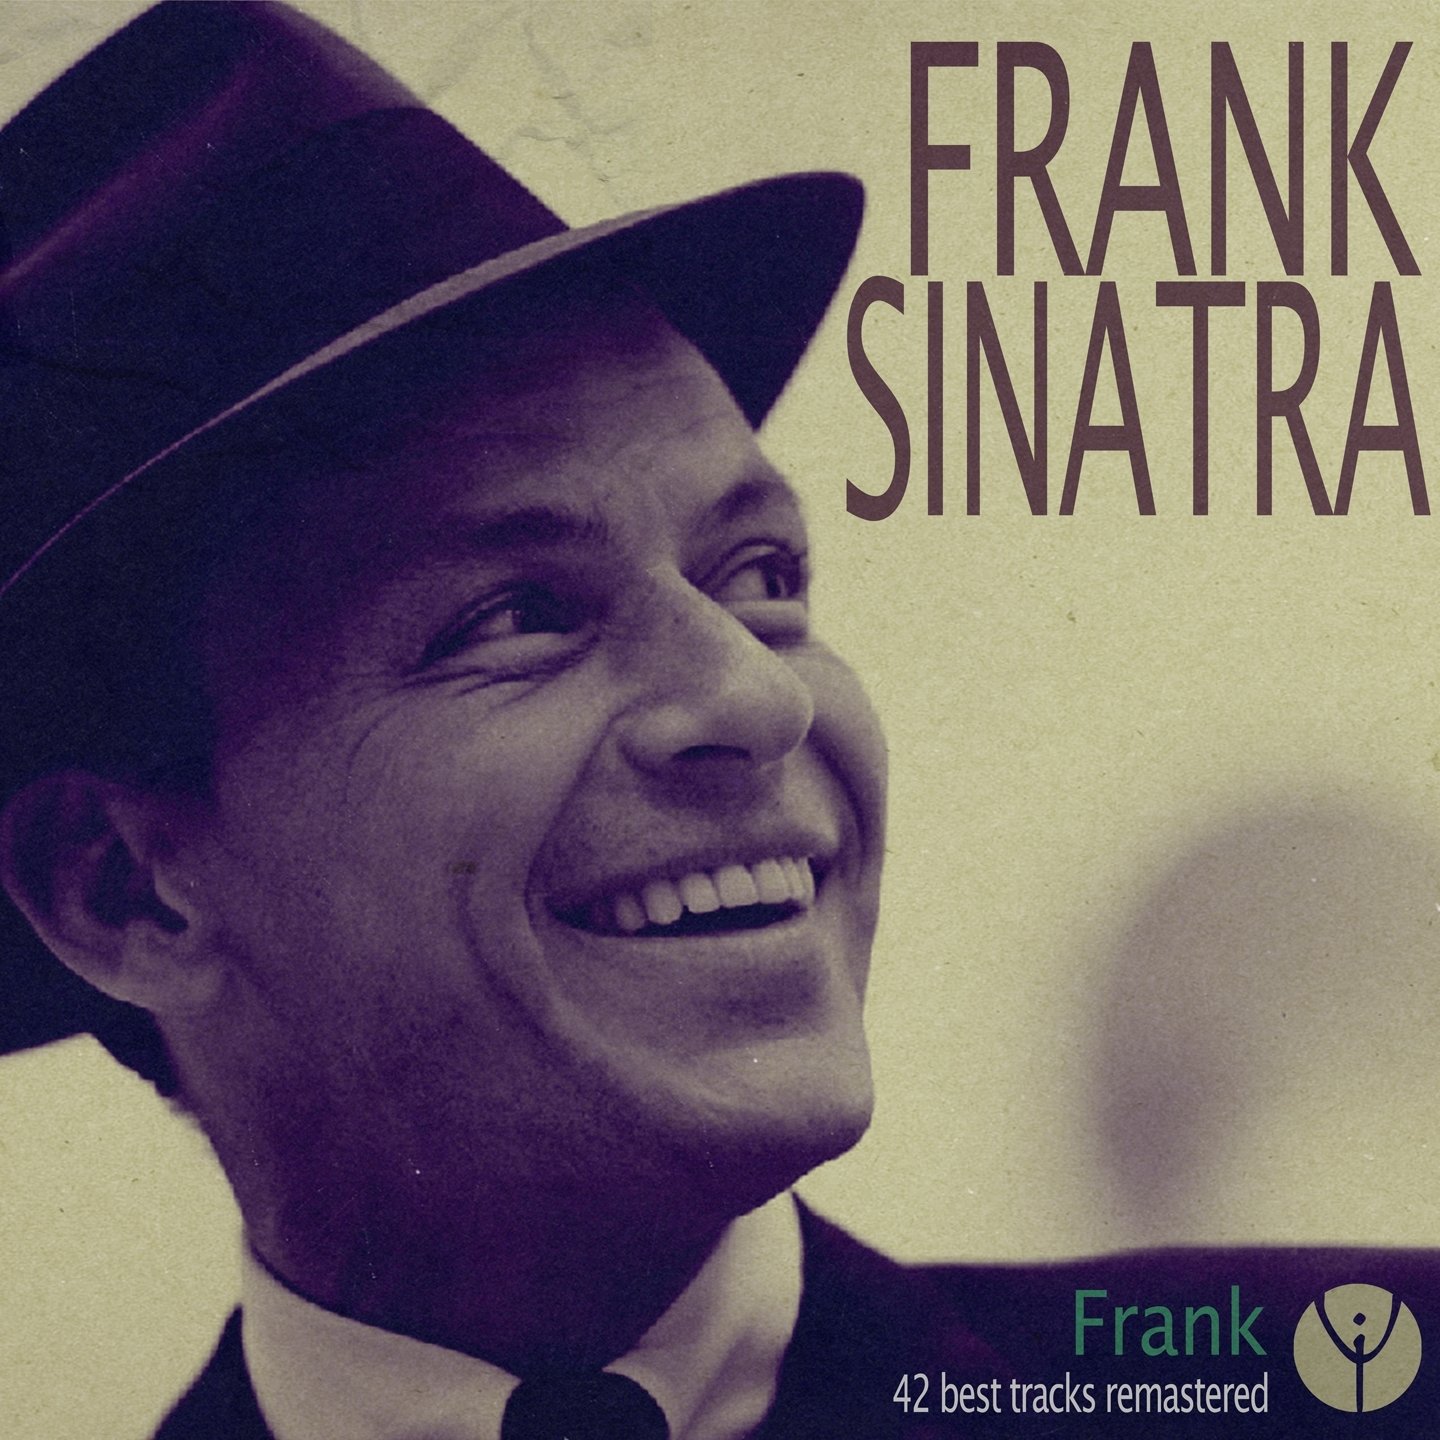 Песня фрэнка синатры на русском языке. Фрэнк Синатра обложка. Frank Sinatra обложка альбома. Фрэнк Синатра 1997. Фрэнк Синатра альбомы.